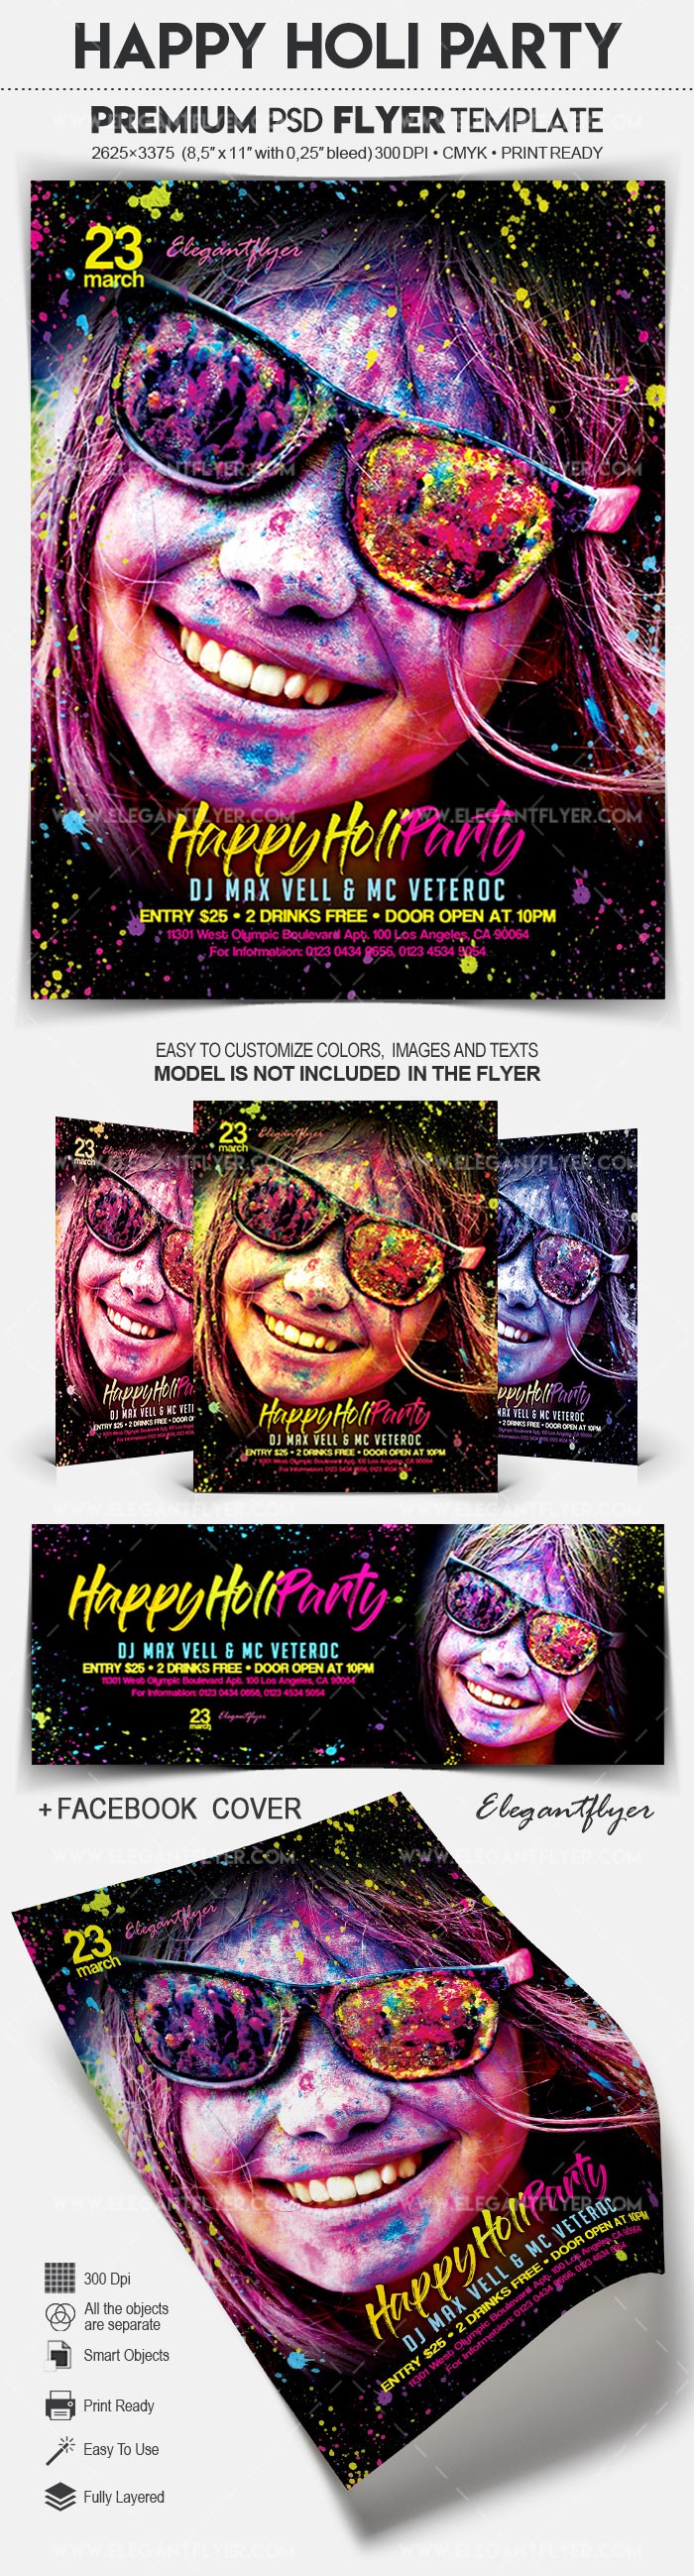 Happy Holi Party by ElegantFlyer